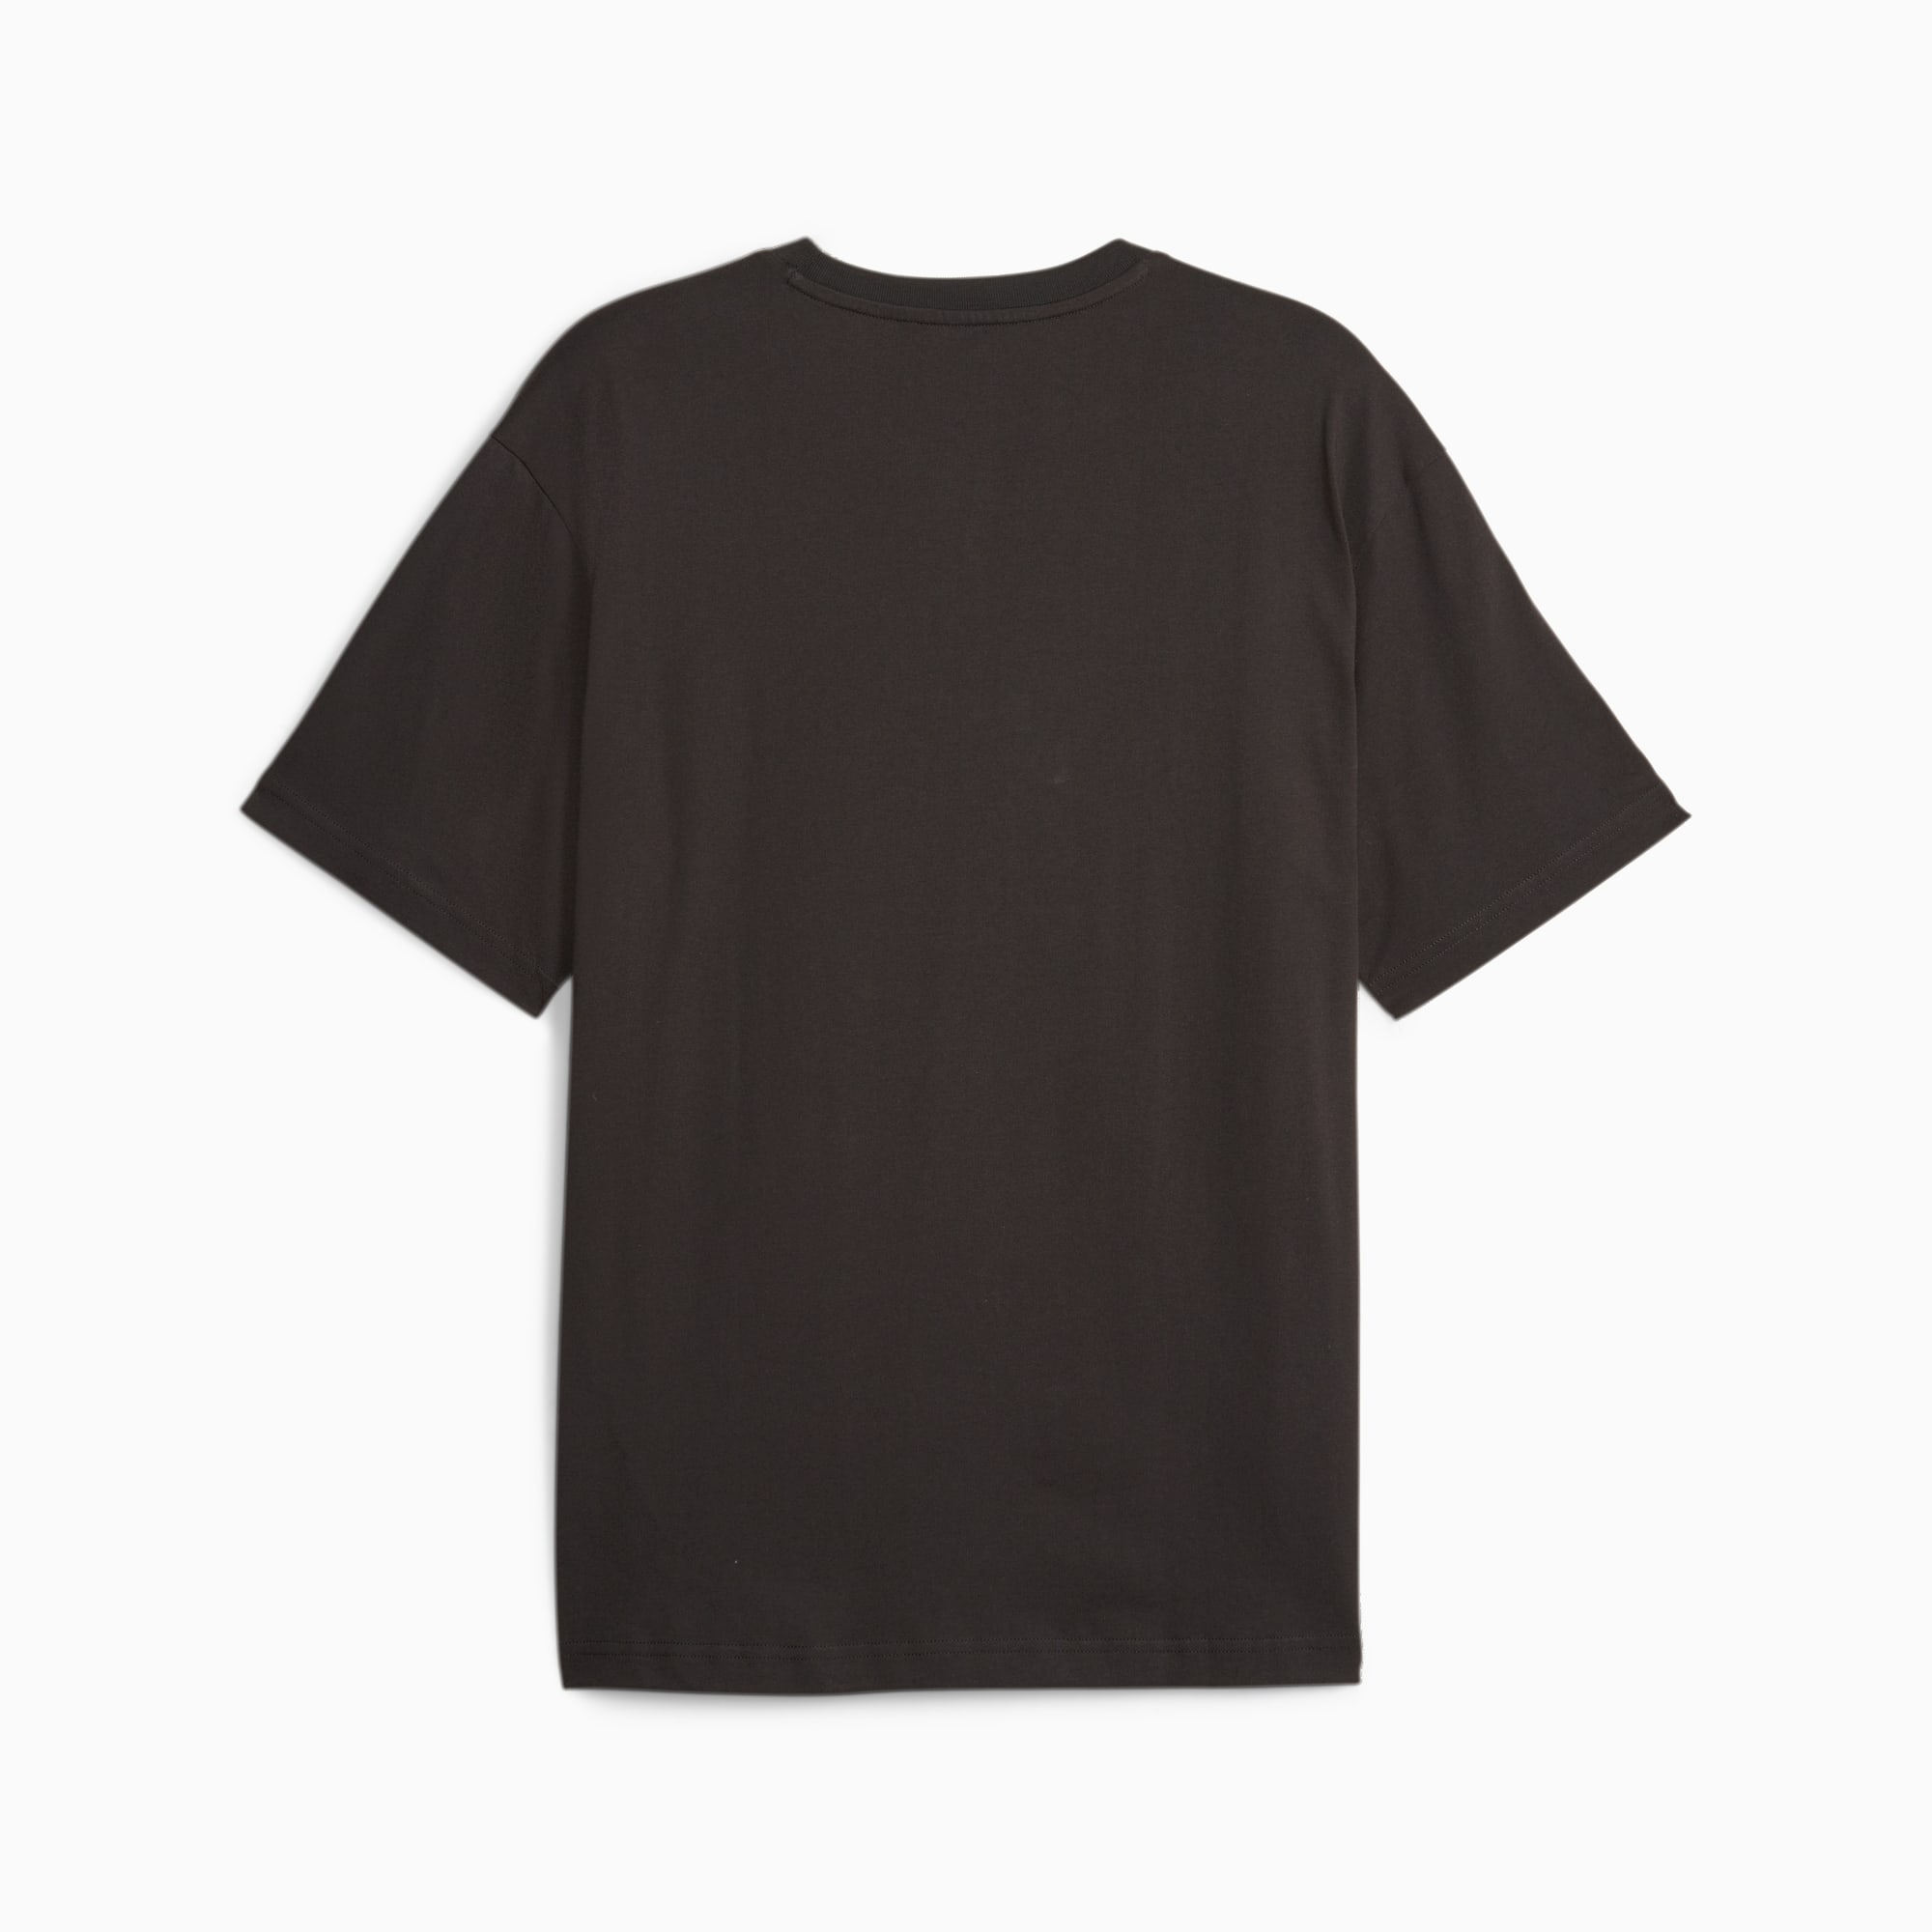 PUMA Rad/Cal Men's T-Shirt, Black